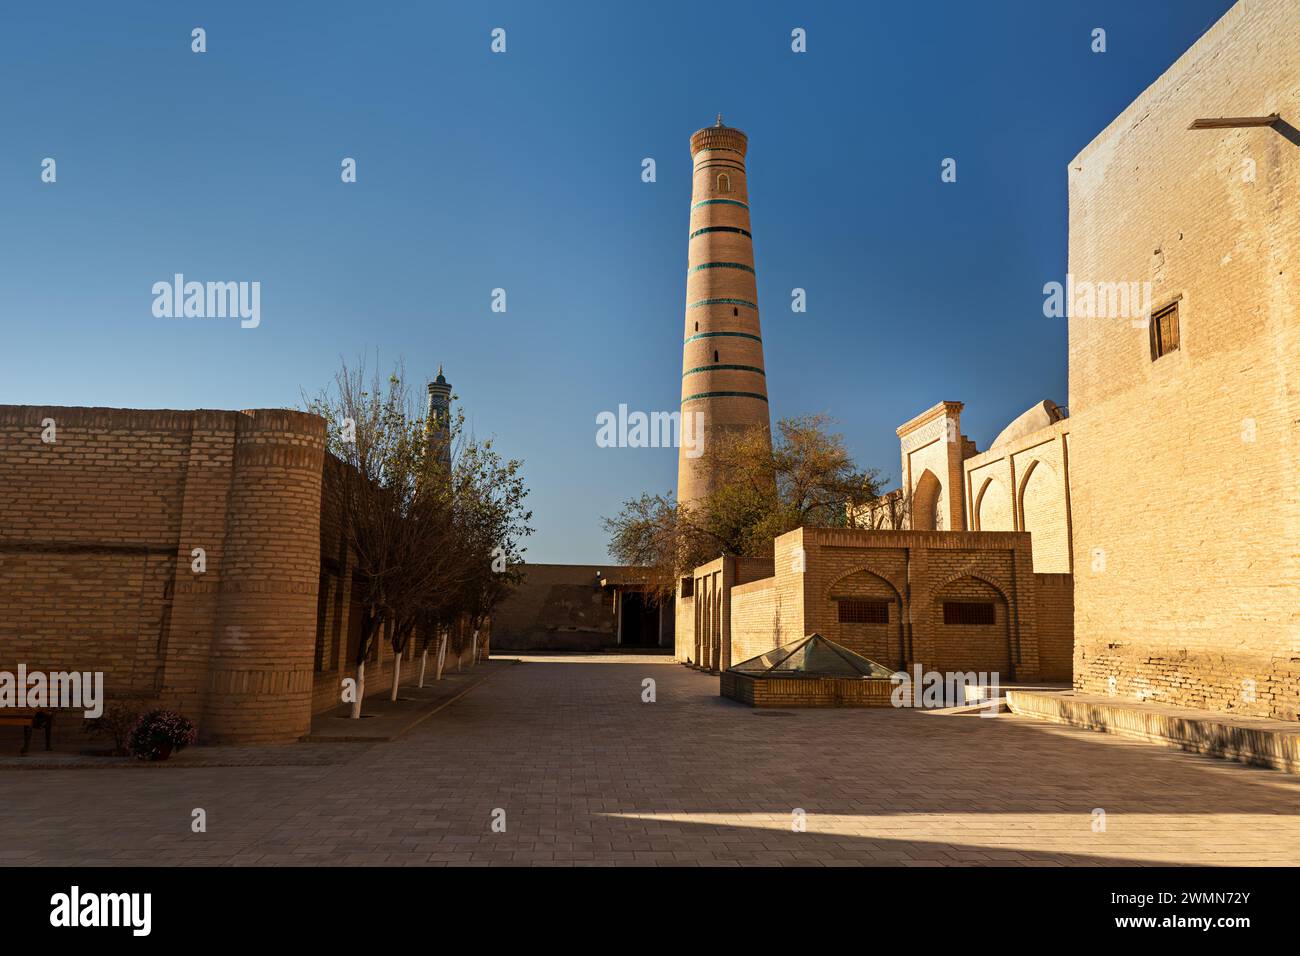 Minaret de la mosquée Juma à Khiva. Ouzbékistan. Une rue vide d'une ancienne ville médiévale Itchan Kala, Khiva, région de Khorezm, Ouzbékistan Banque D'Images